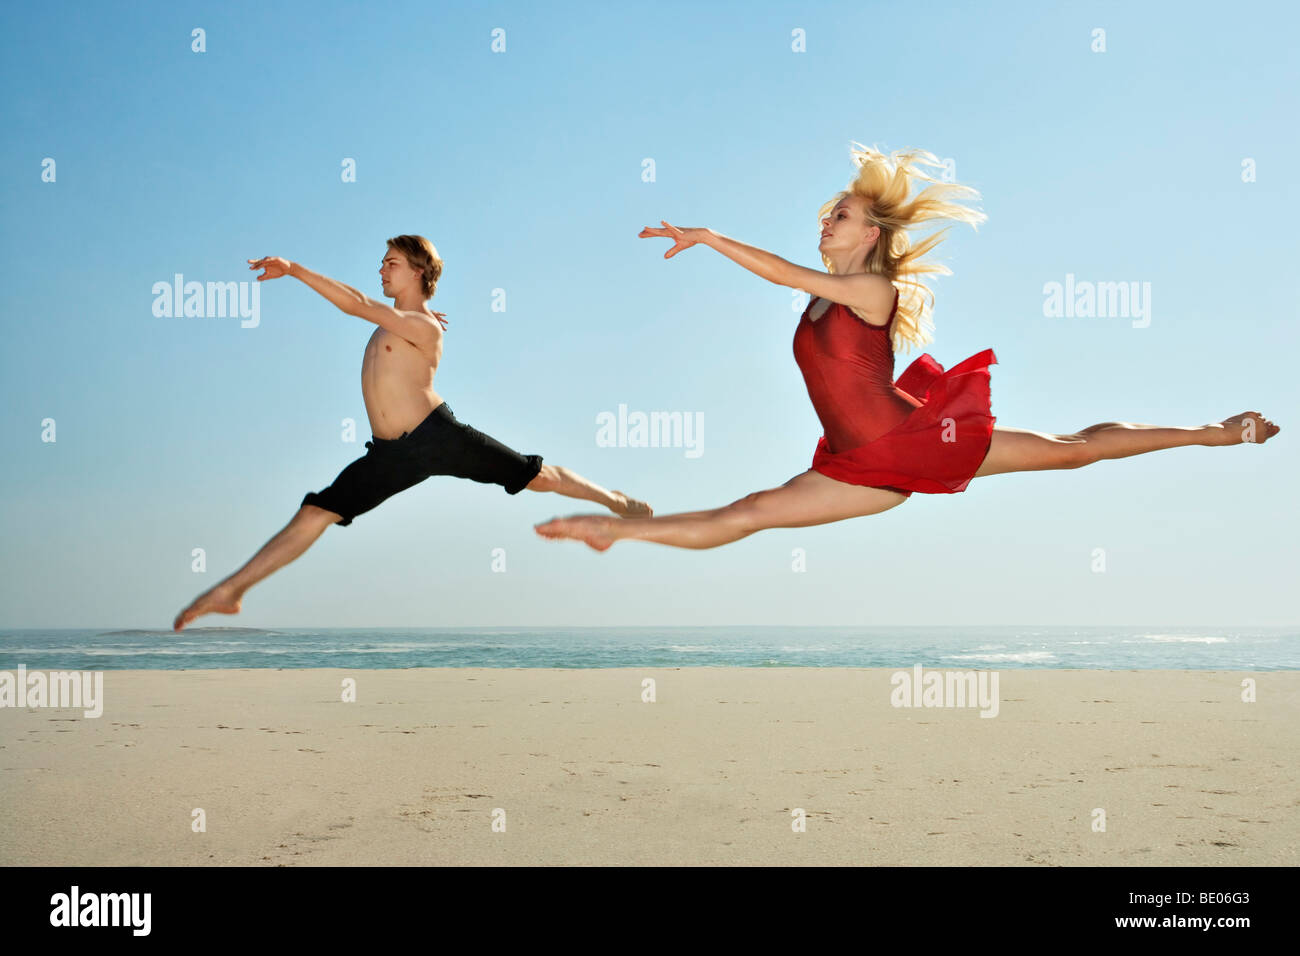 Danseurs sautant sur une plage Banque D'Images